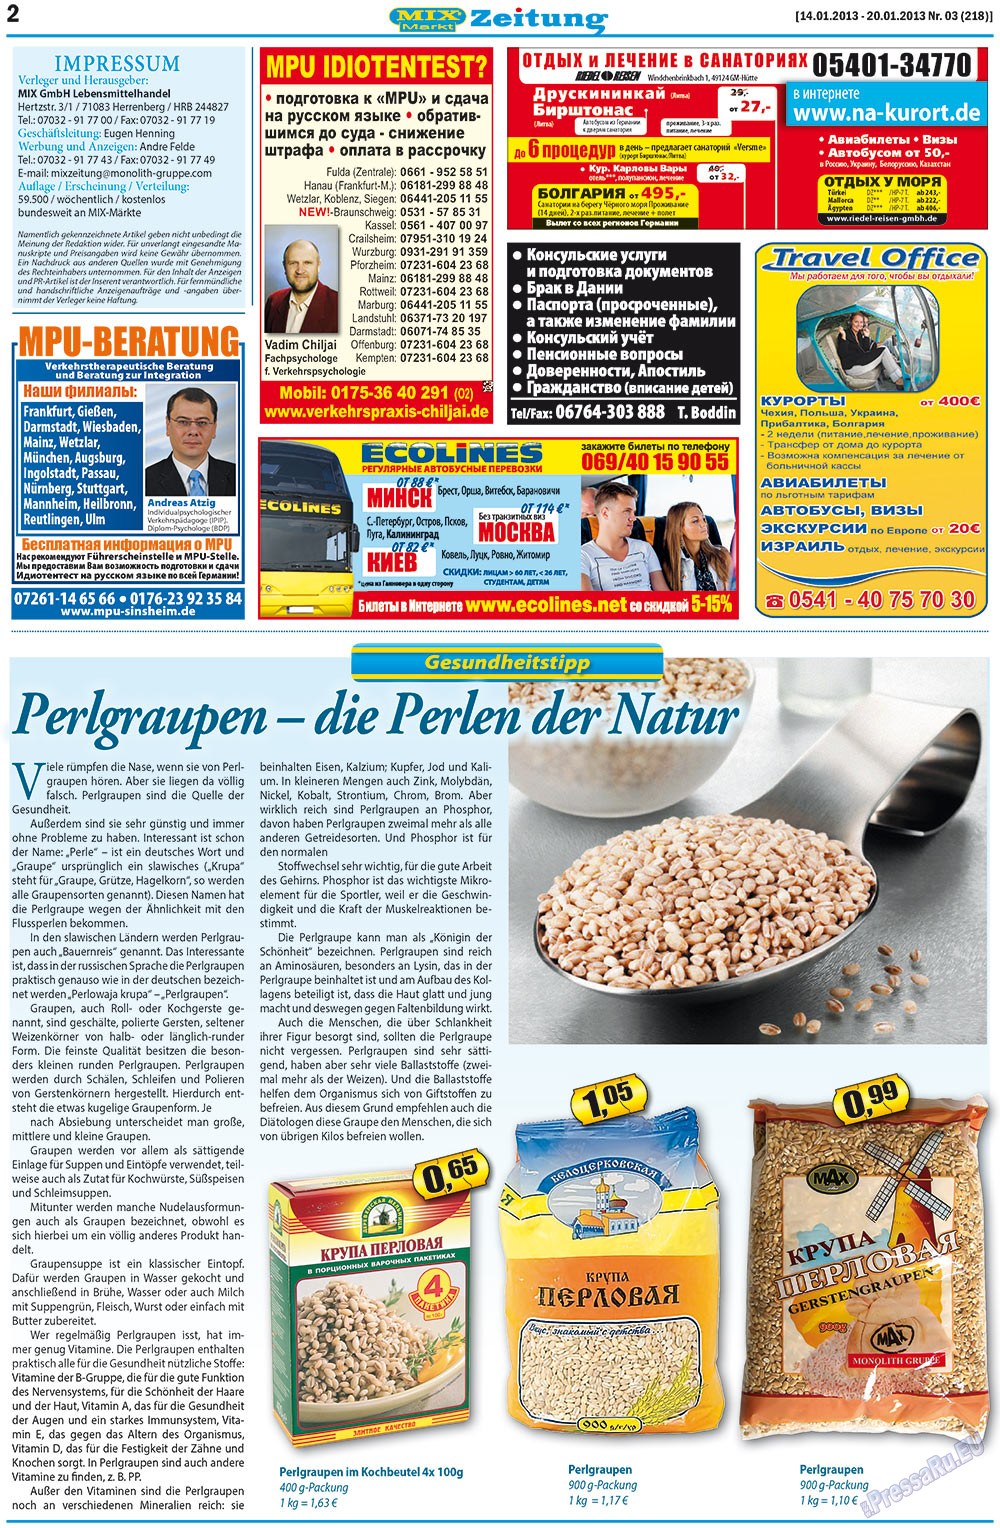 MIX-Markt Zeitung (газета). 2013 год, номер 3, стр. 2